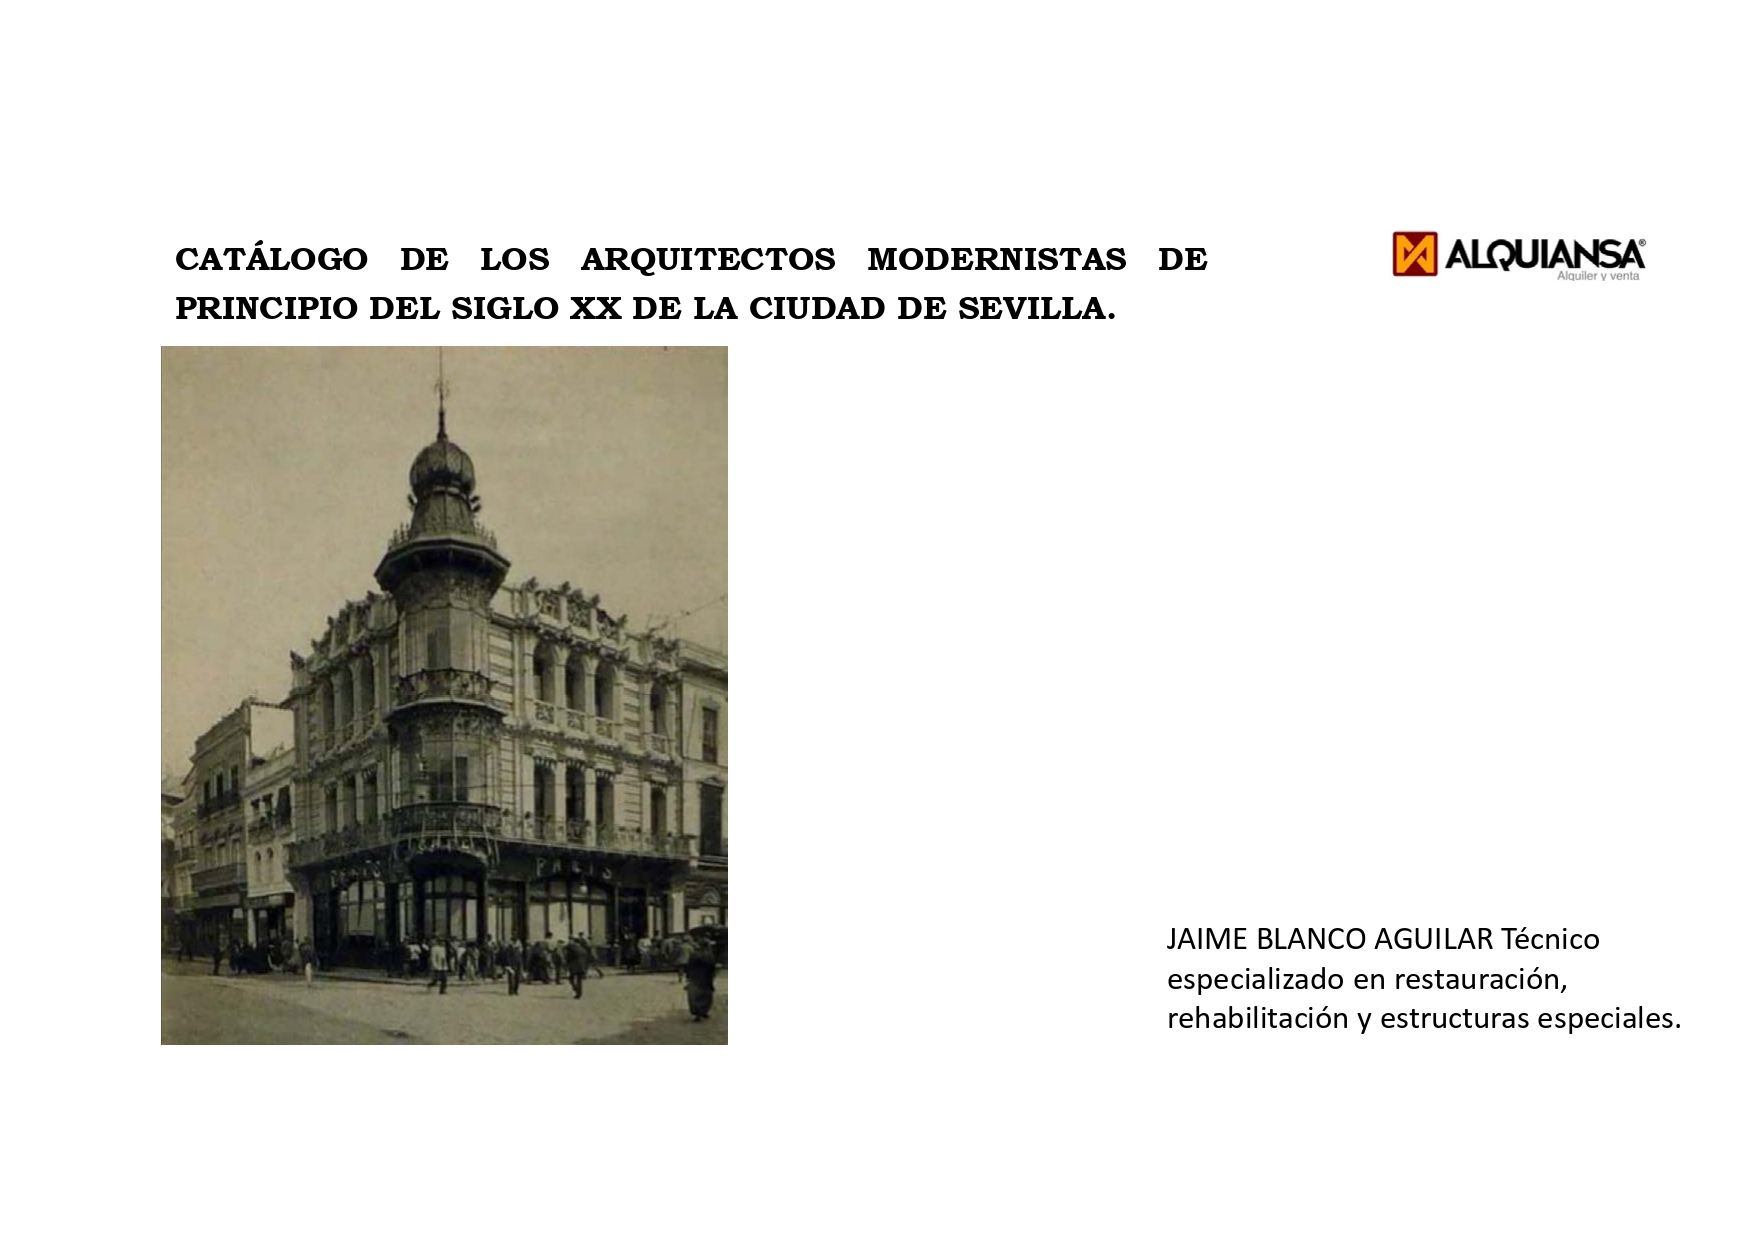 Catálogo de los Arquitectos modernista de la ciudad de Sevilla de principios del siglo XX - Alquiansa